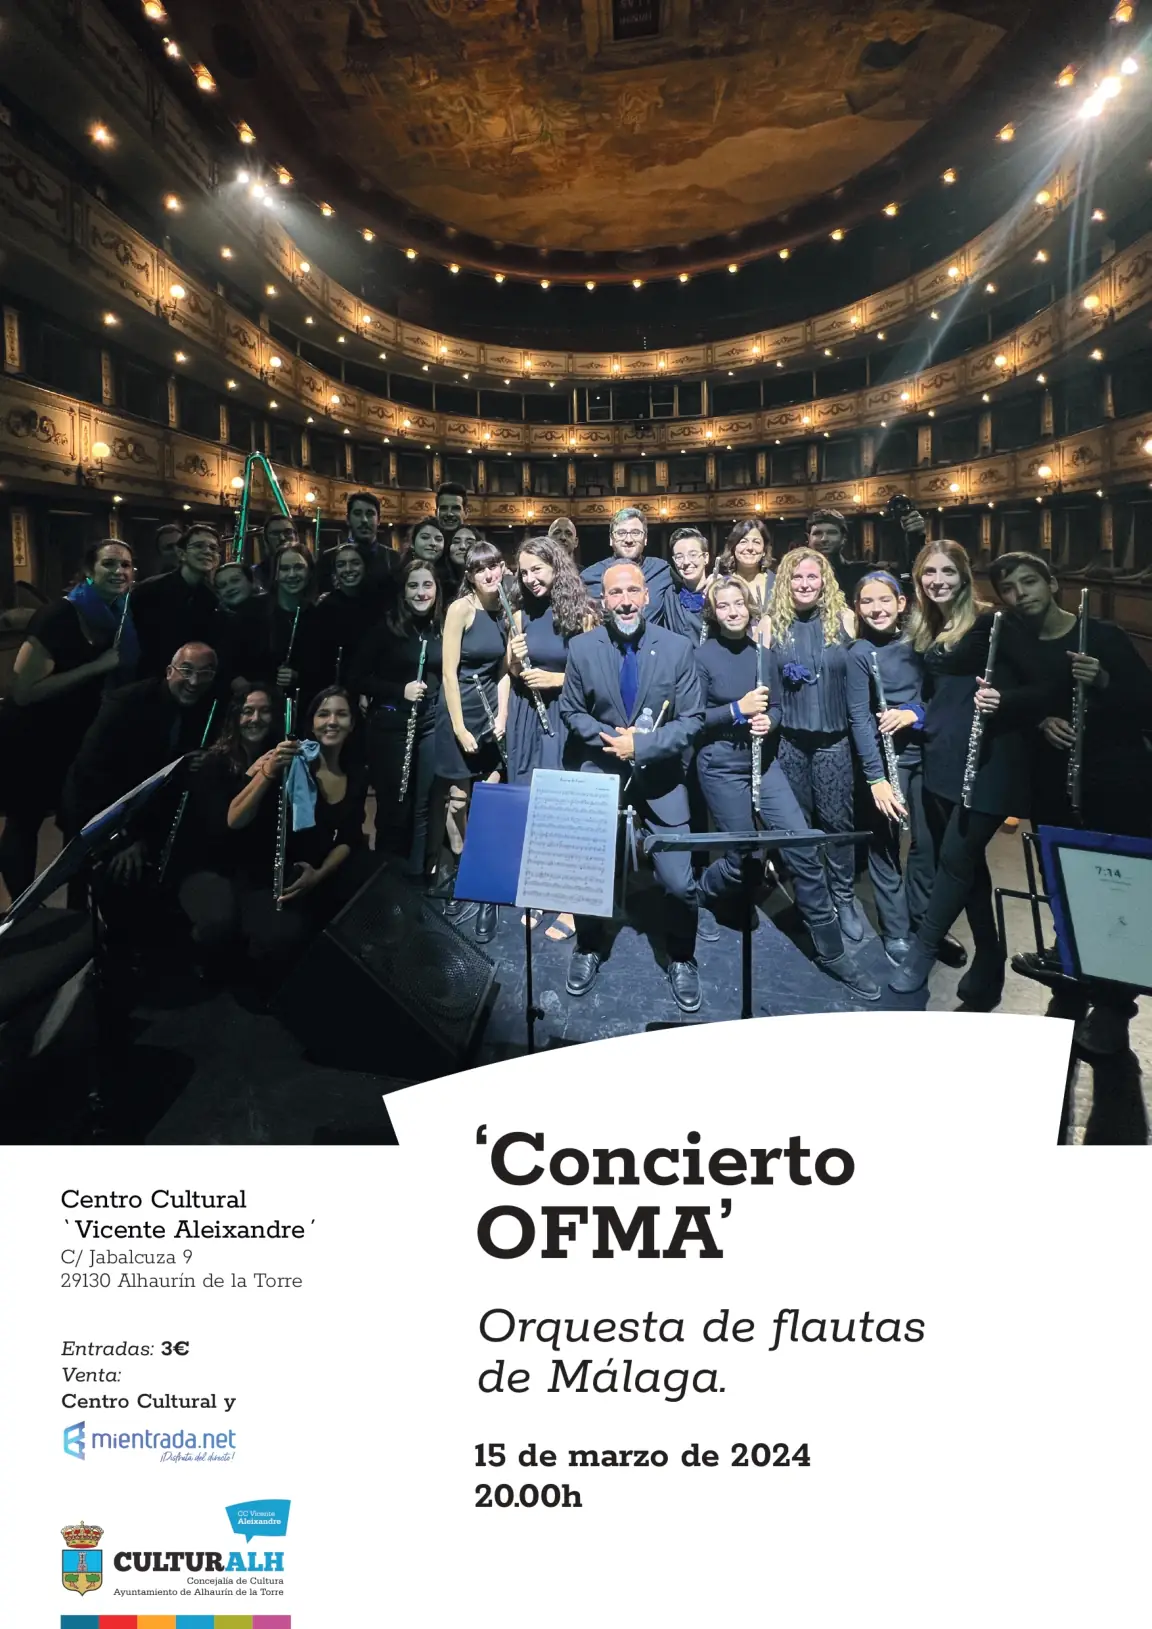 La Orquesta de Flautas de Málaga vuelve a Alhaurín de la Torre el 15 de marzo  